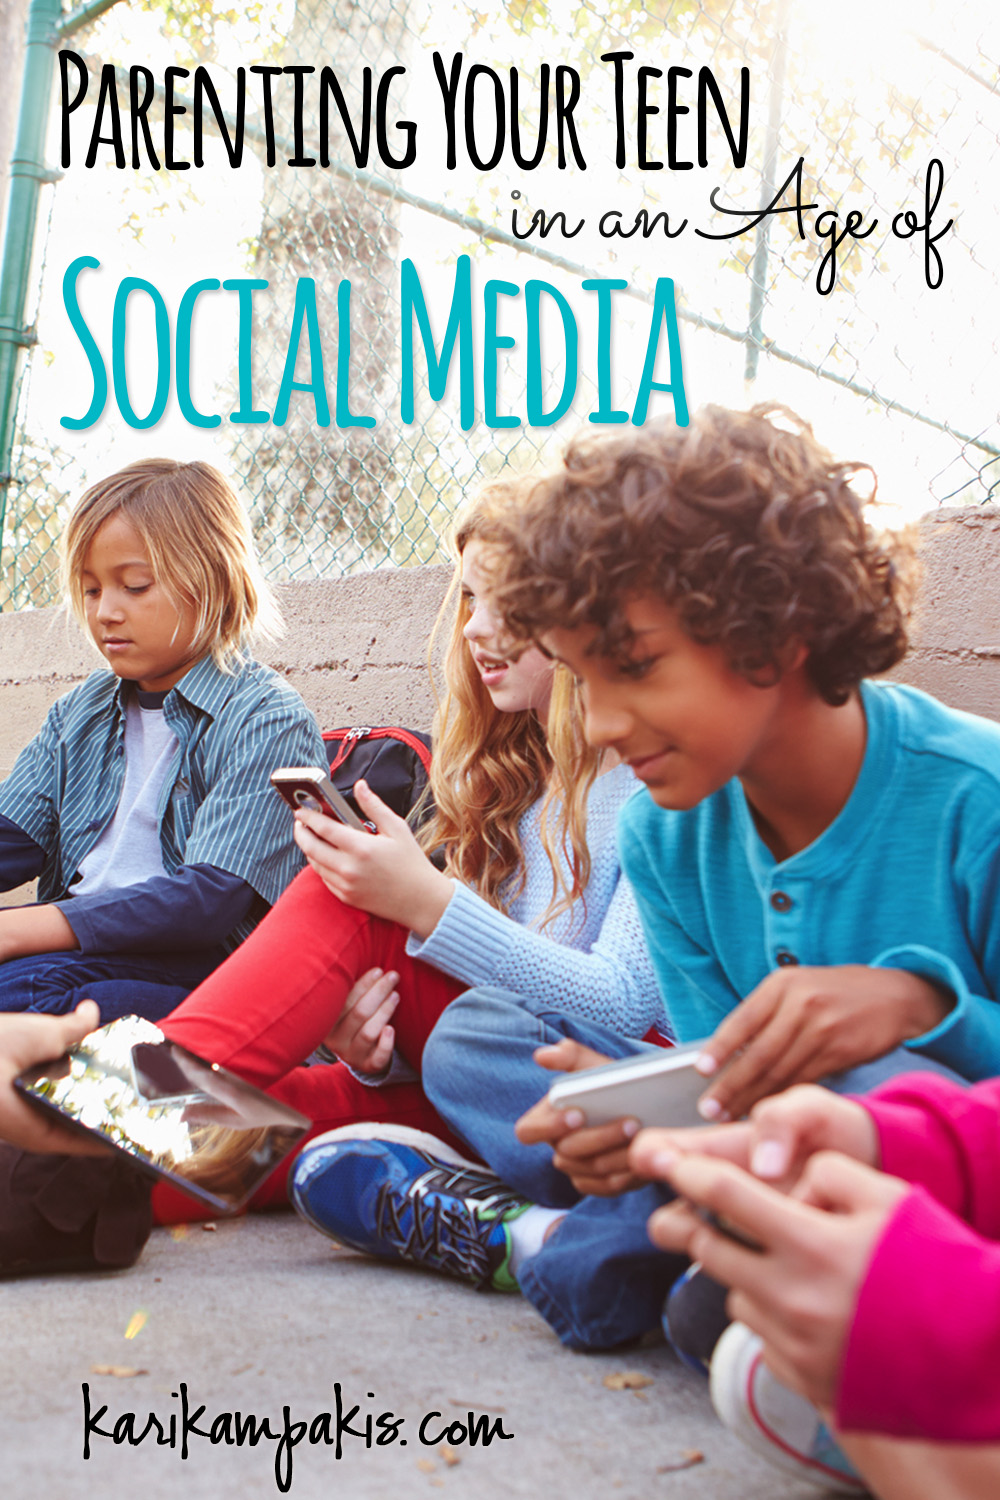 Parenting Your Teen in an Age of Social Media | Kari Kampakis